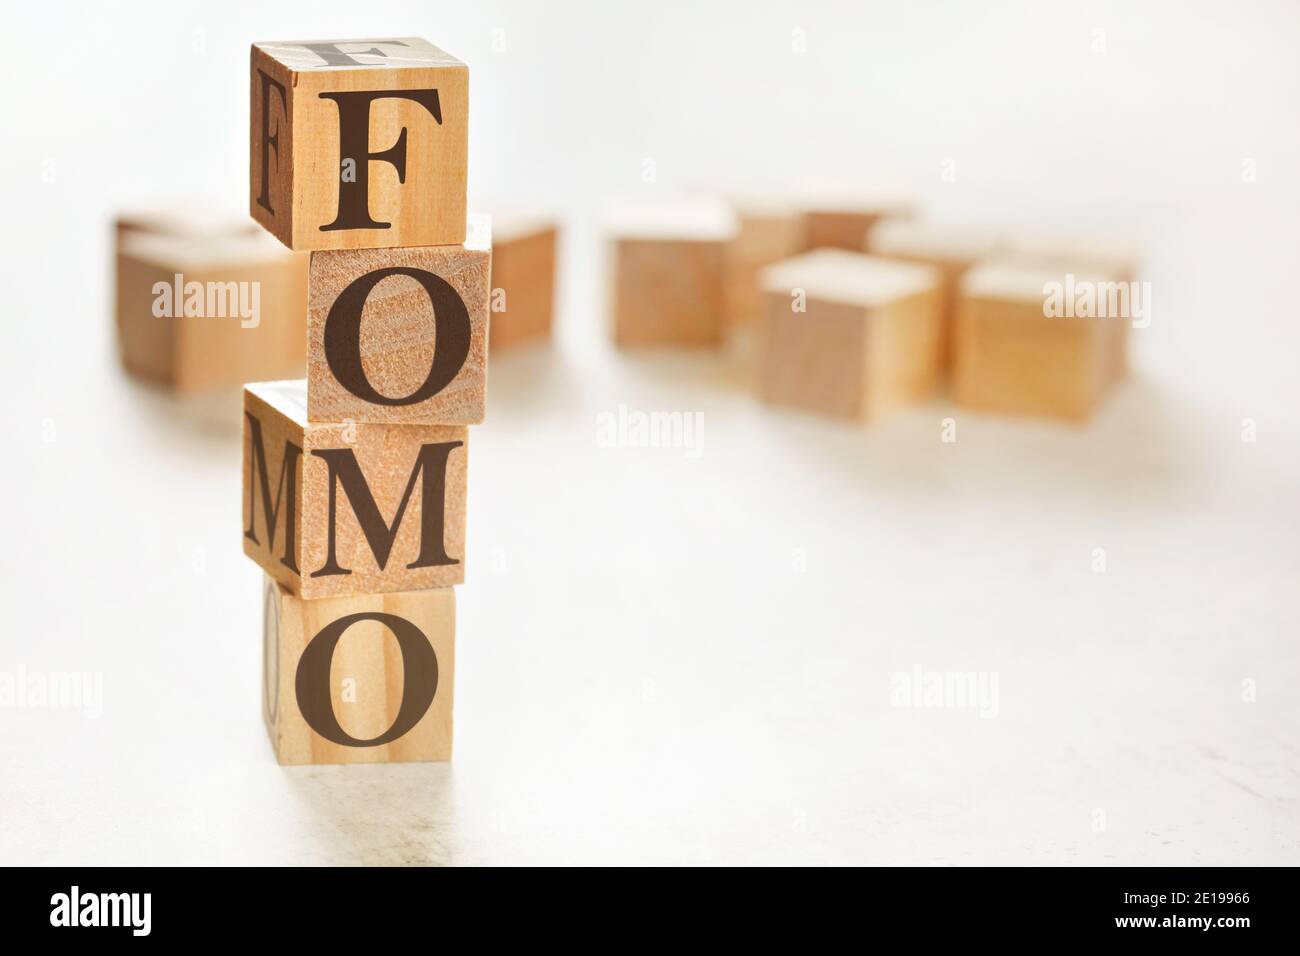 Vier Holzwürfel im Stapel angeordnet mit Buchstaben FOMO (was Angst vor dem Verfehlen bedeutet) darauf, Platz für Text / Bild in der rechten unteren Ecke Stockfoto